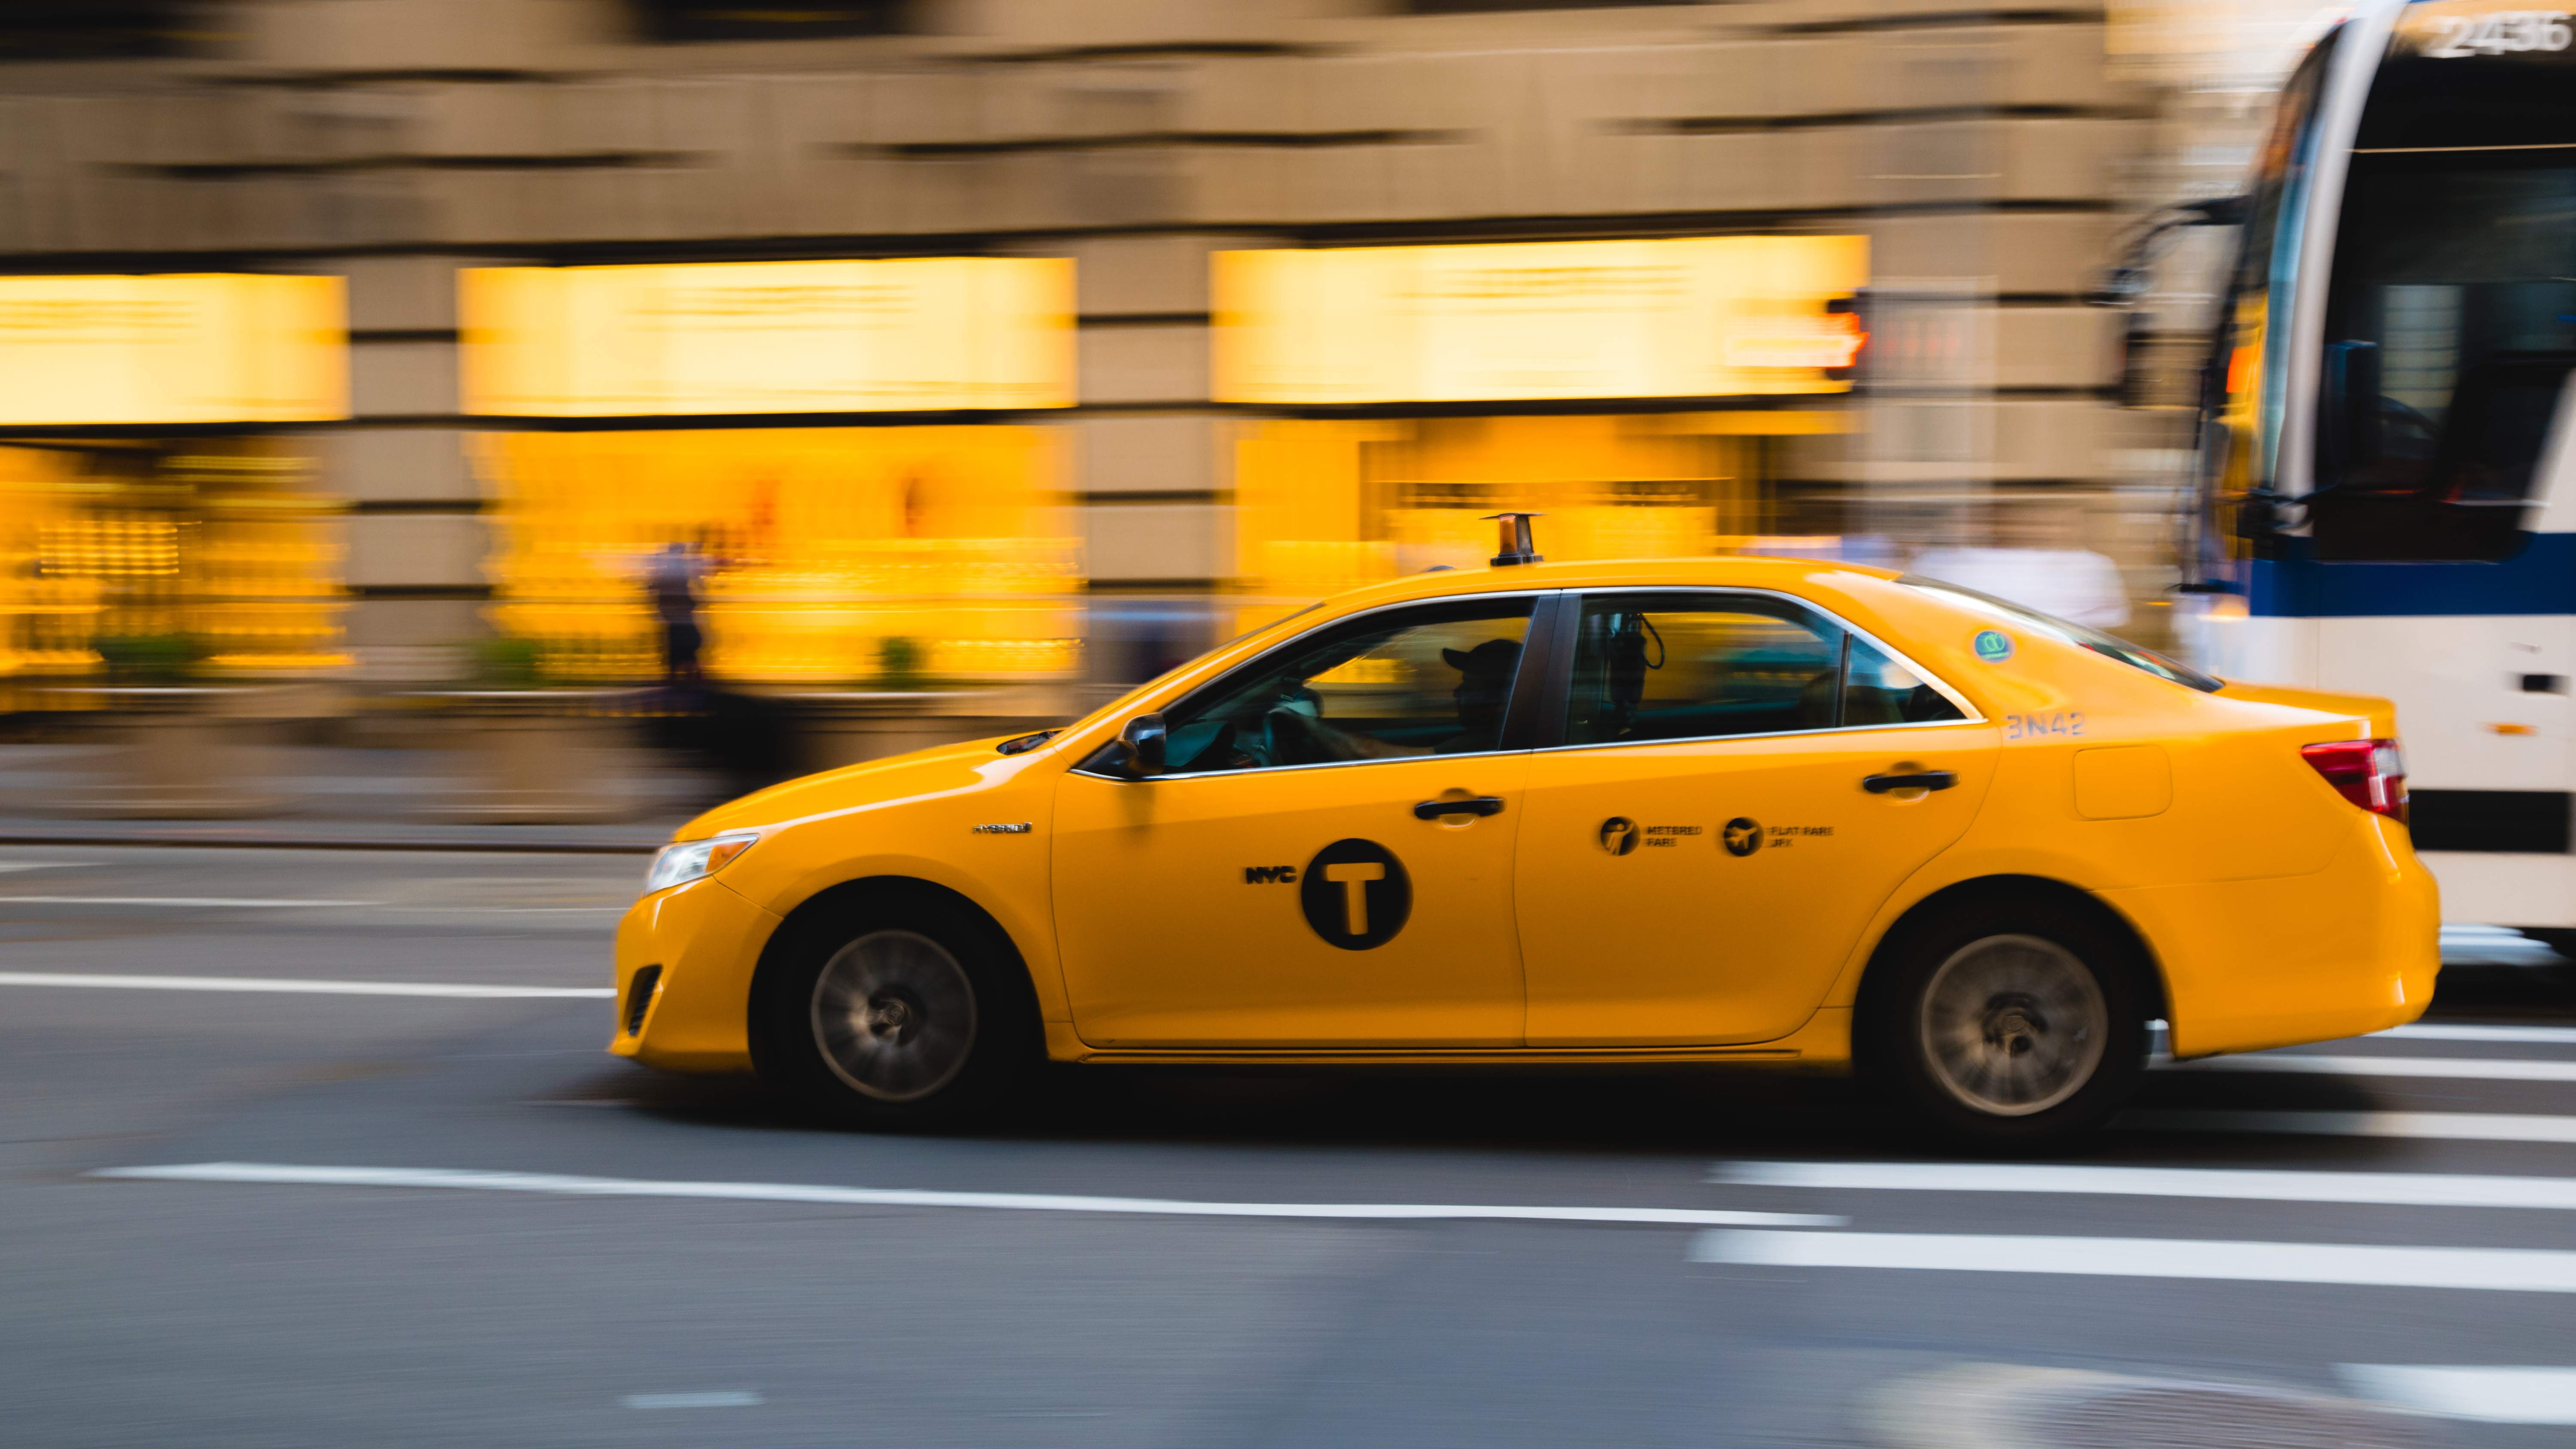 Taxi Wyszków - szybka i tania usługa taksówkarska